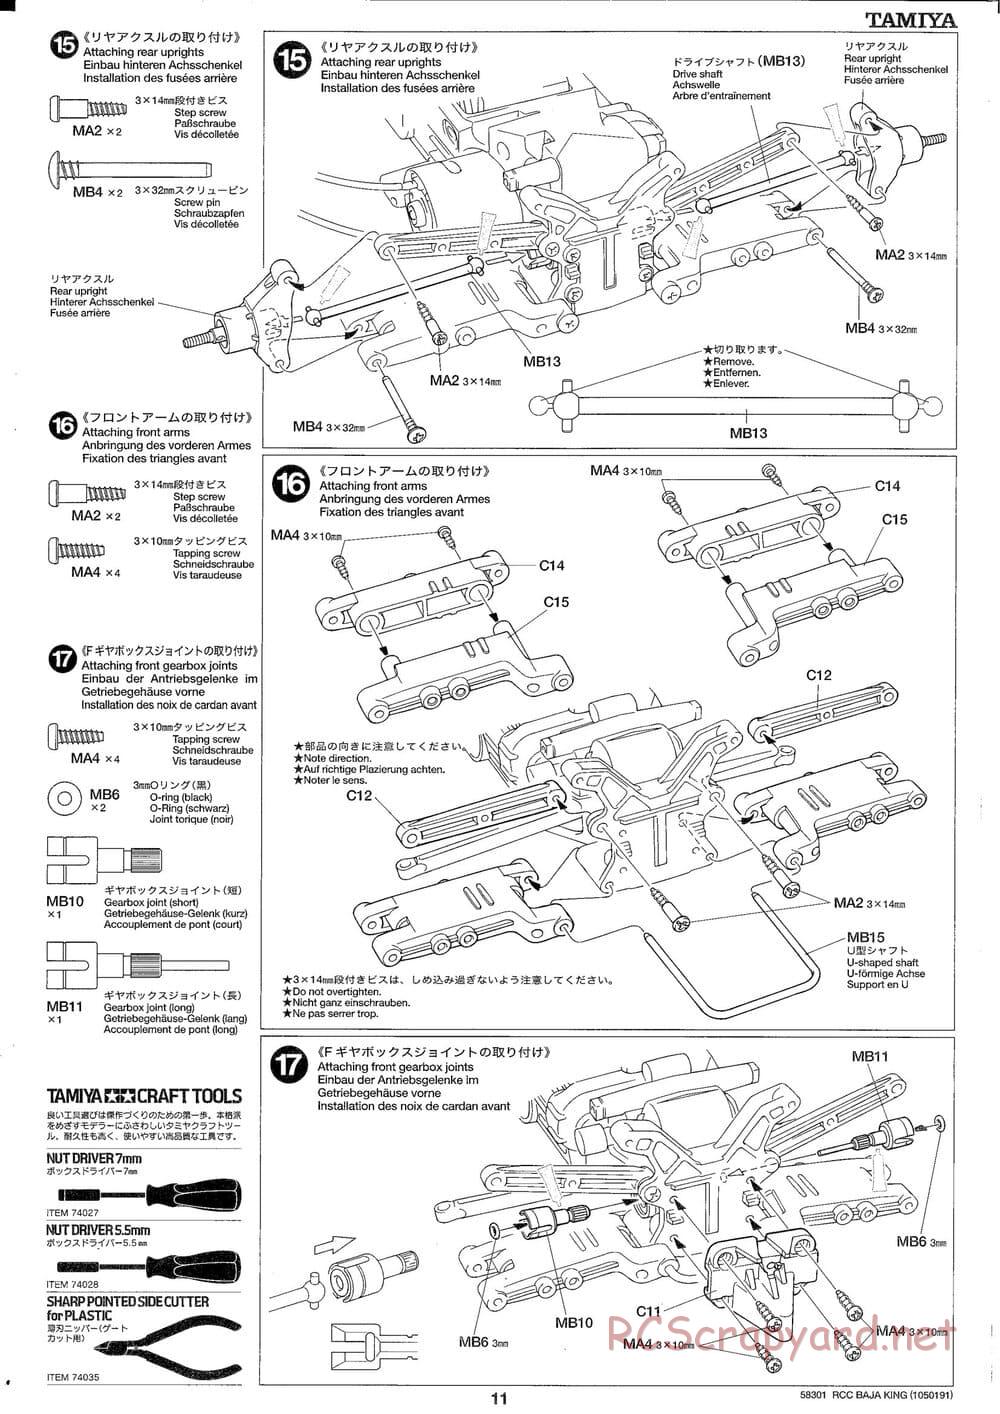 Tamiya - Baja King - TL-01B Chassis - Manual - Page 11